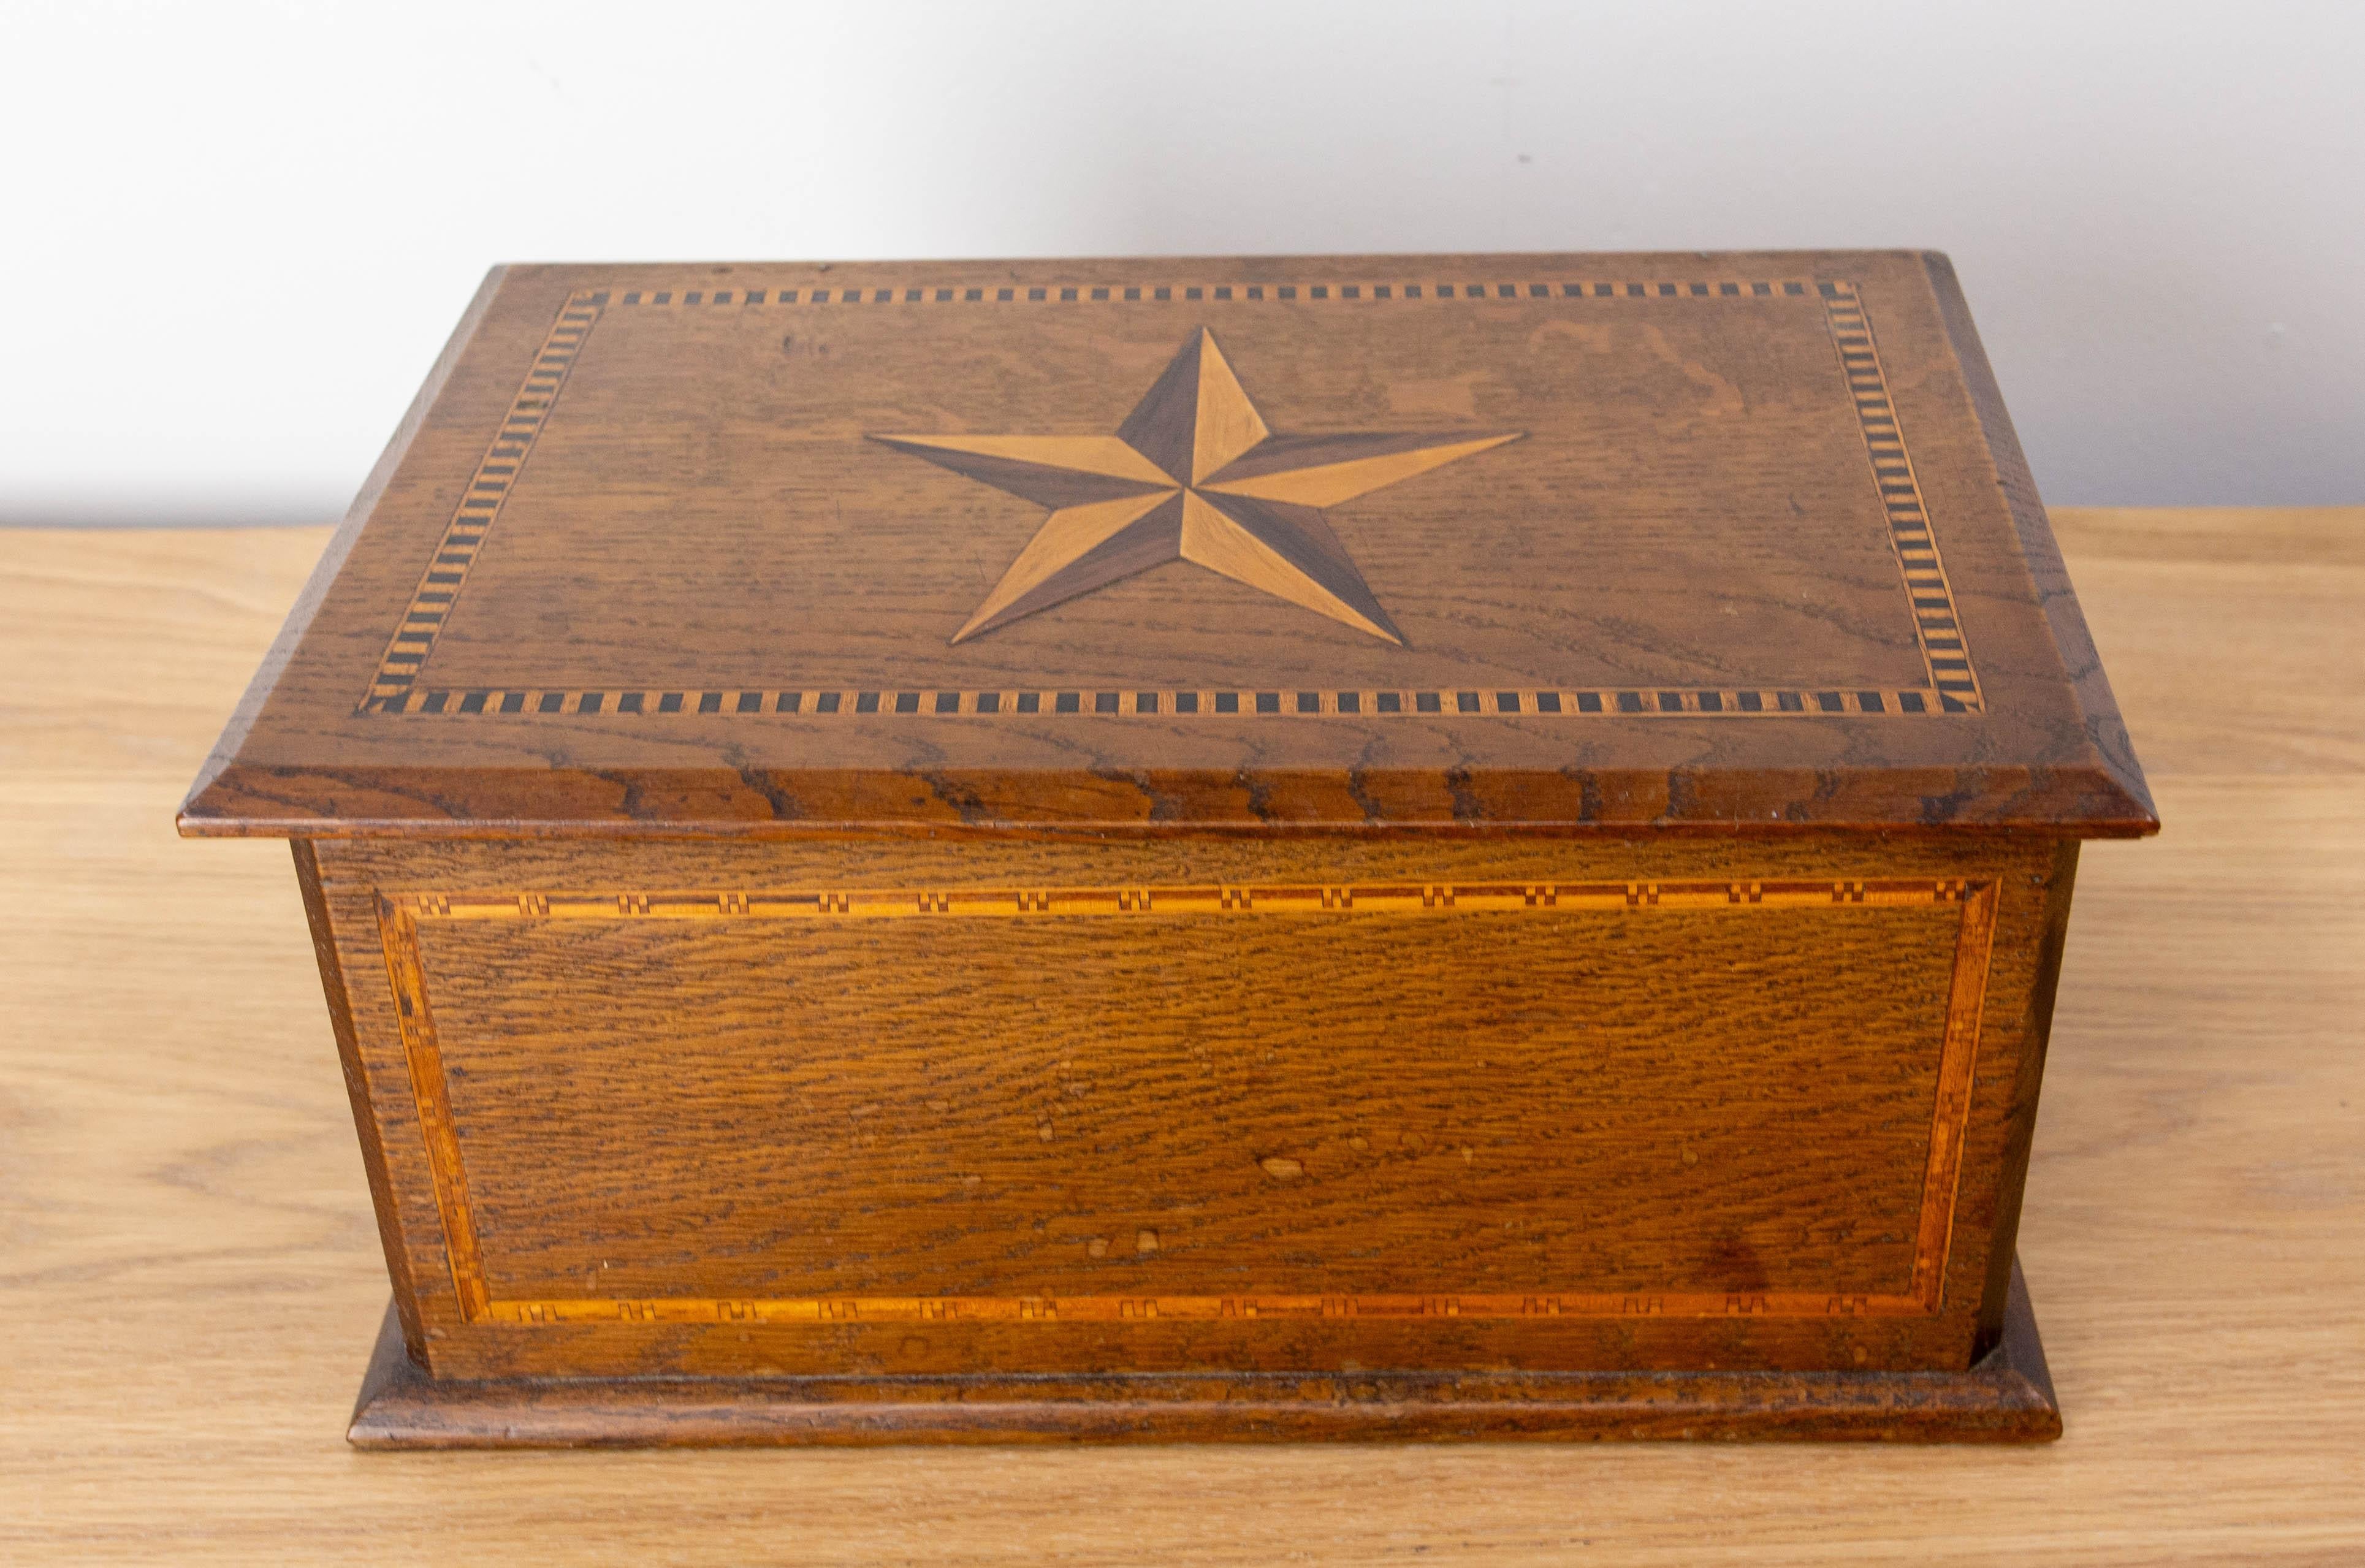 Coffret en bois français décoré d'une marqueterie comprenant une étoile sur le dessus.
Fabriqué vers 1920.
Bon état avec des traces d'eau sur les côtés.

Expédition :
21 / 32.5 / 15 cm 1.7 kg